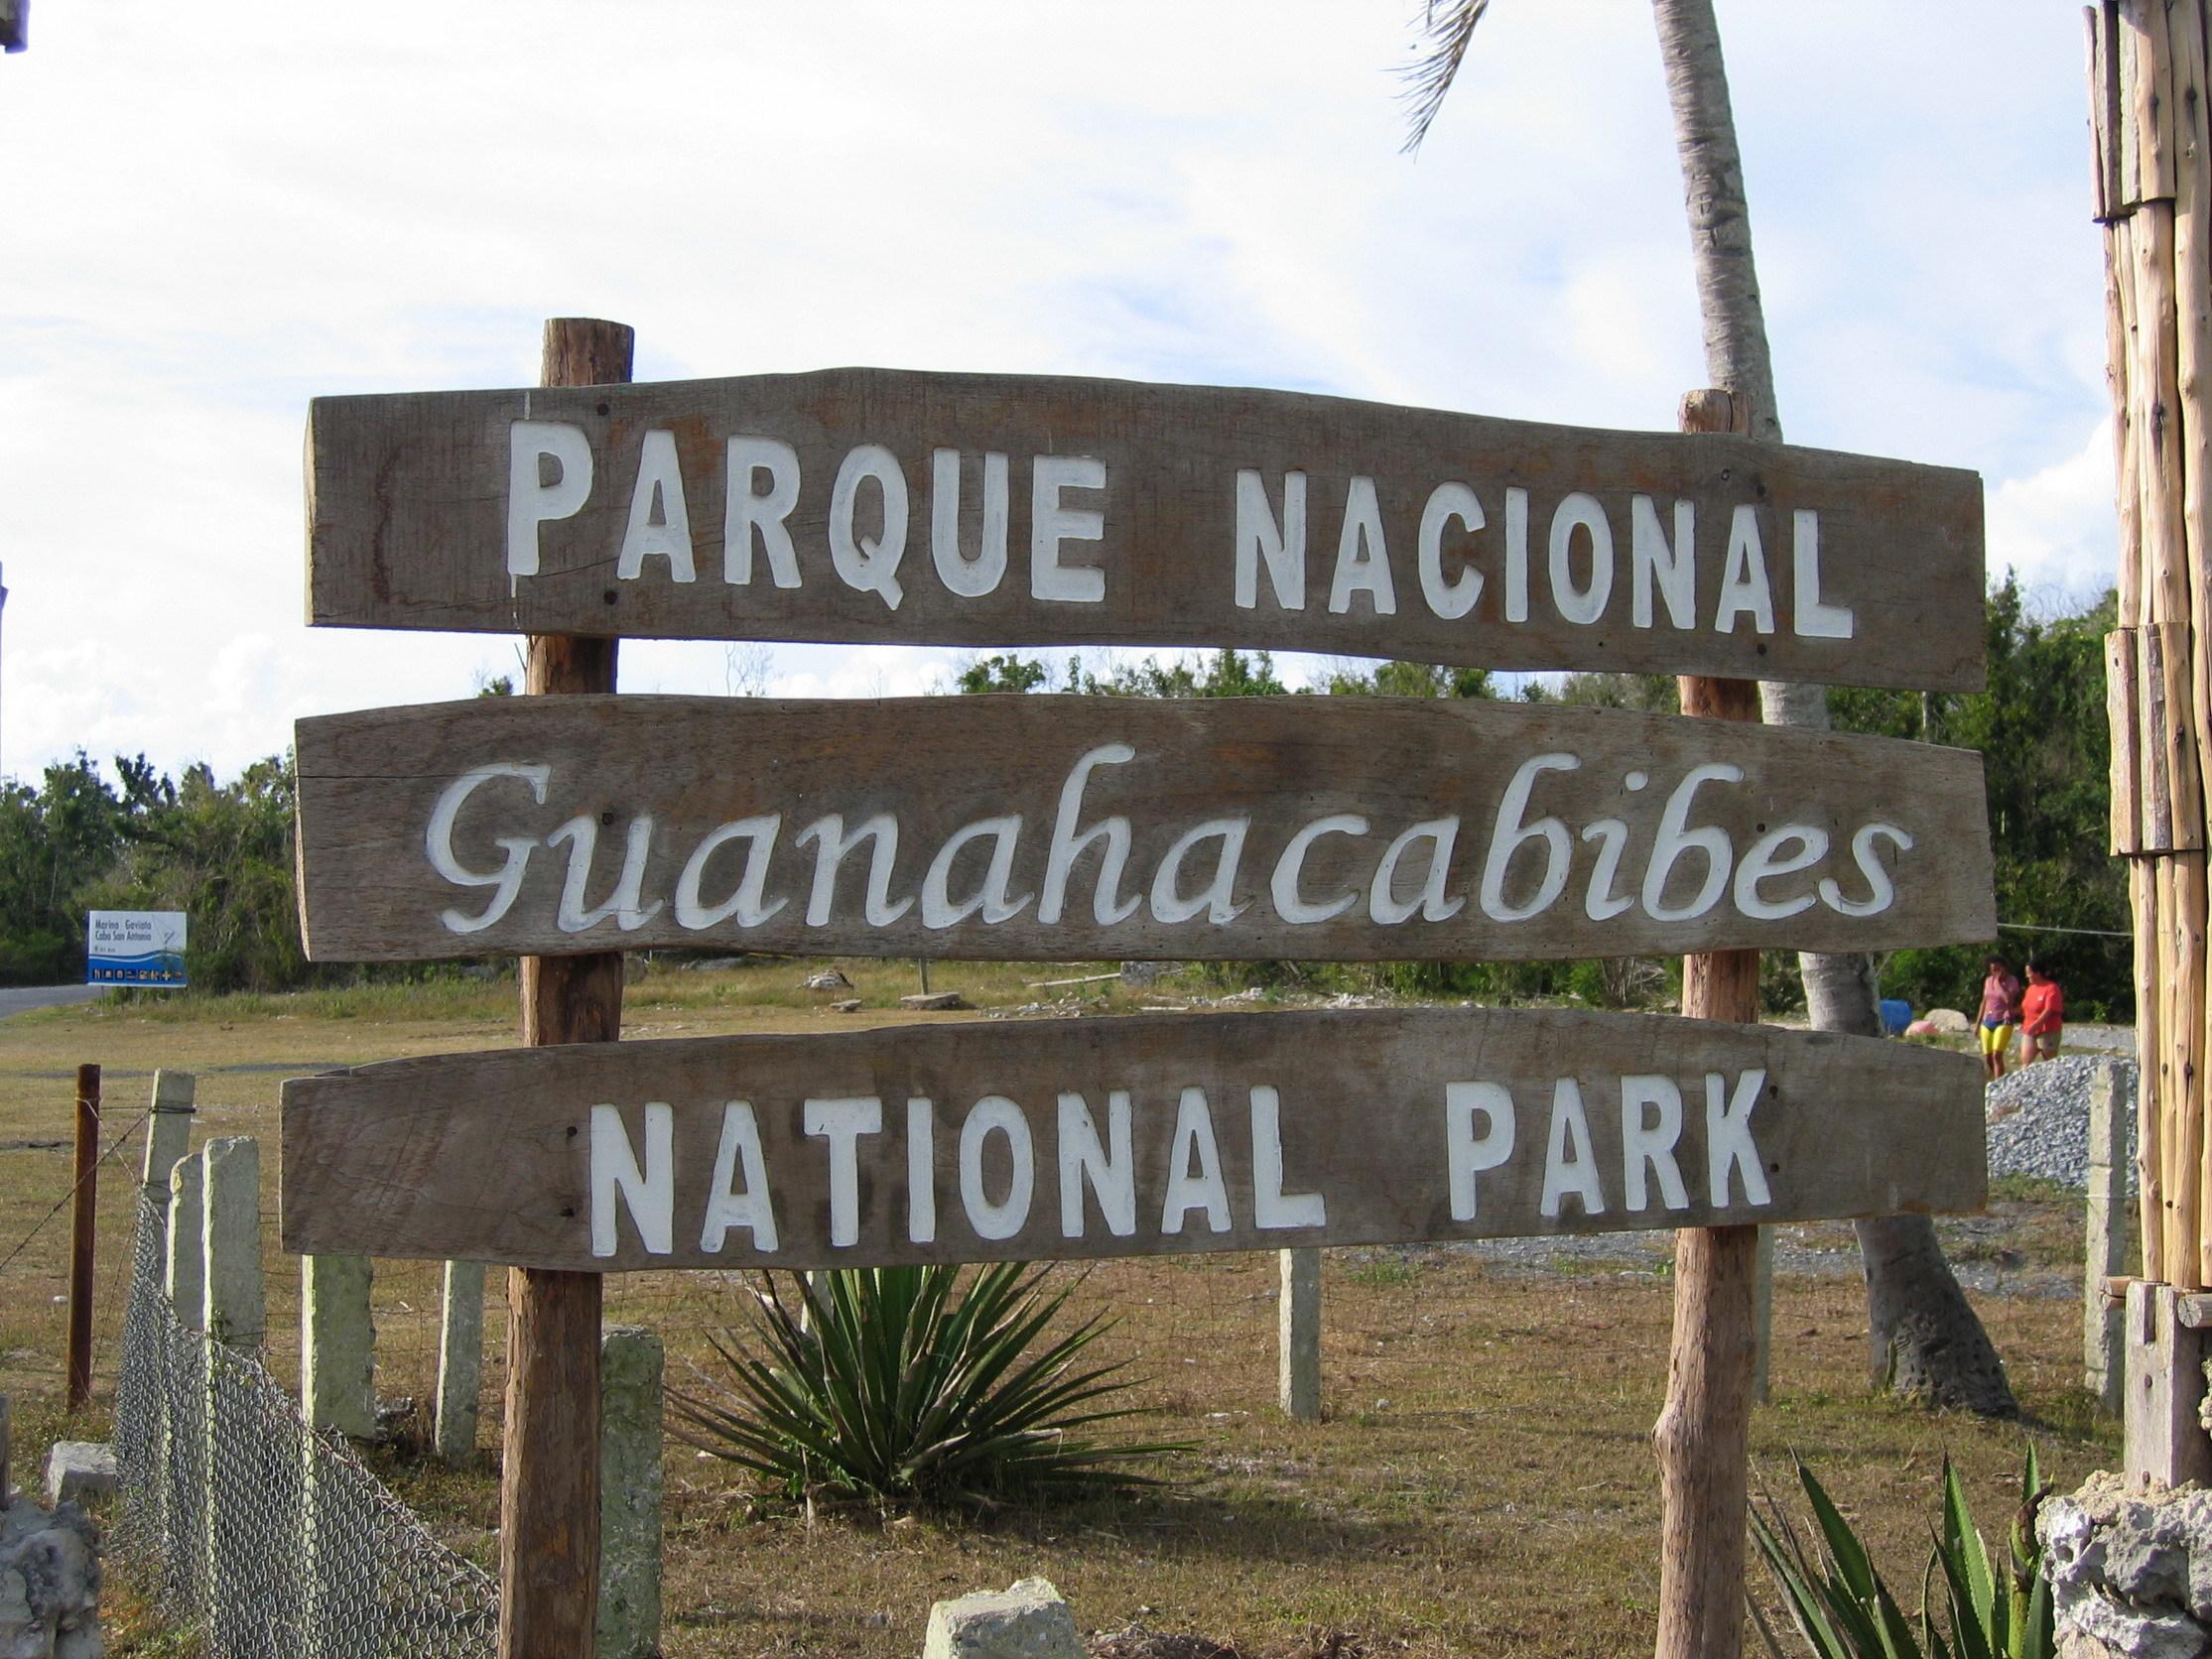 Национальный парк Пенинсула де Гуанаакабибес